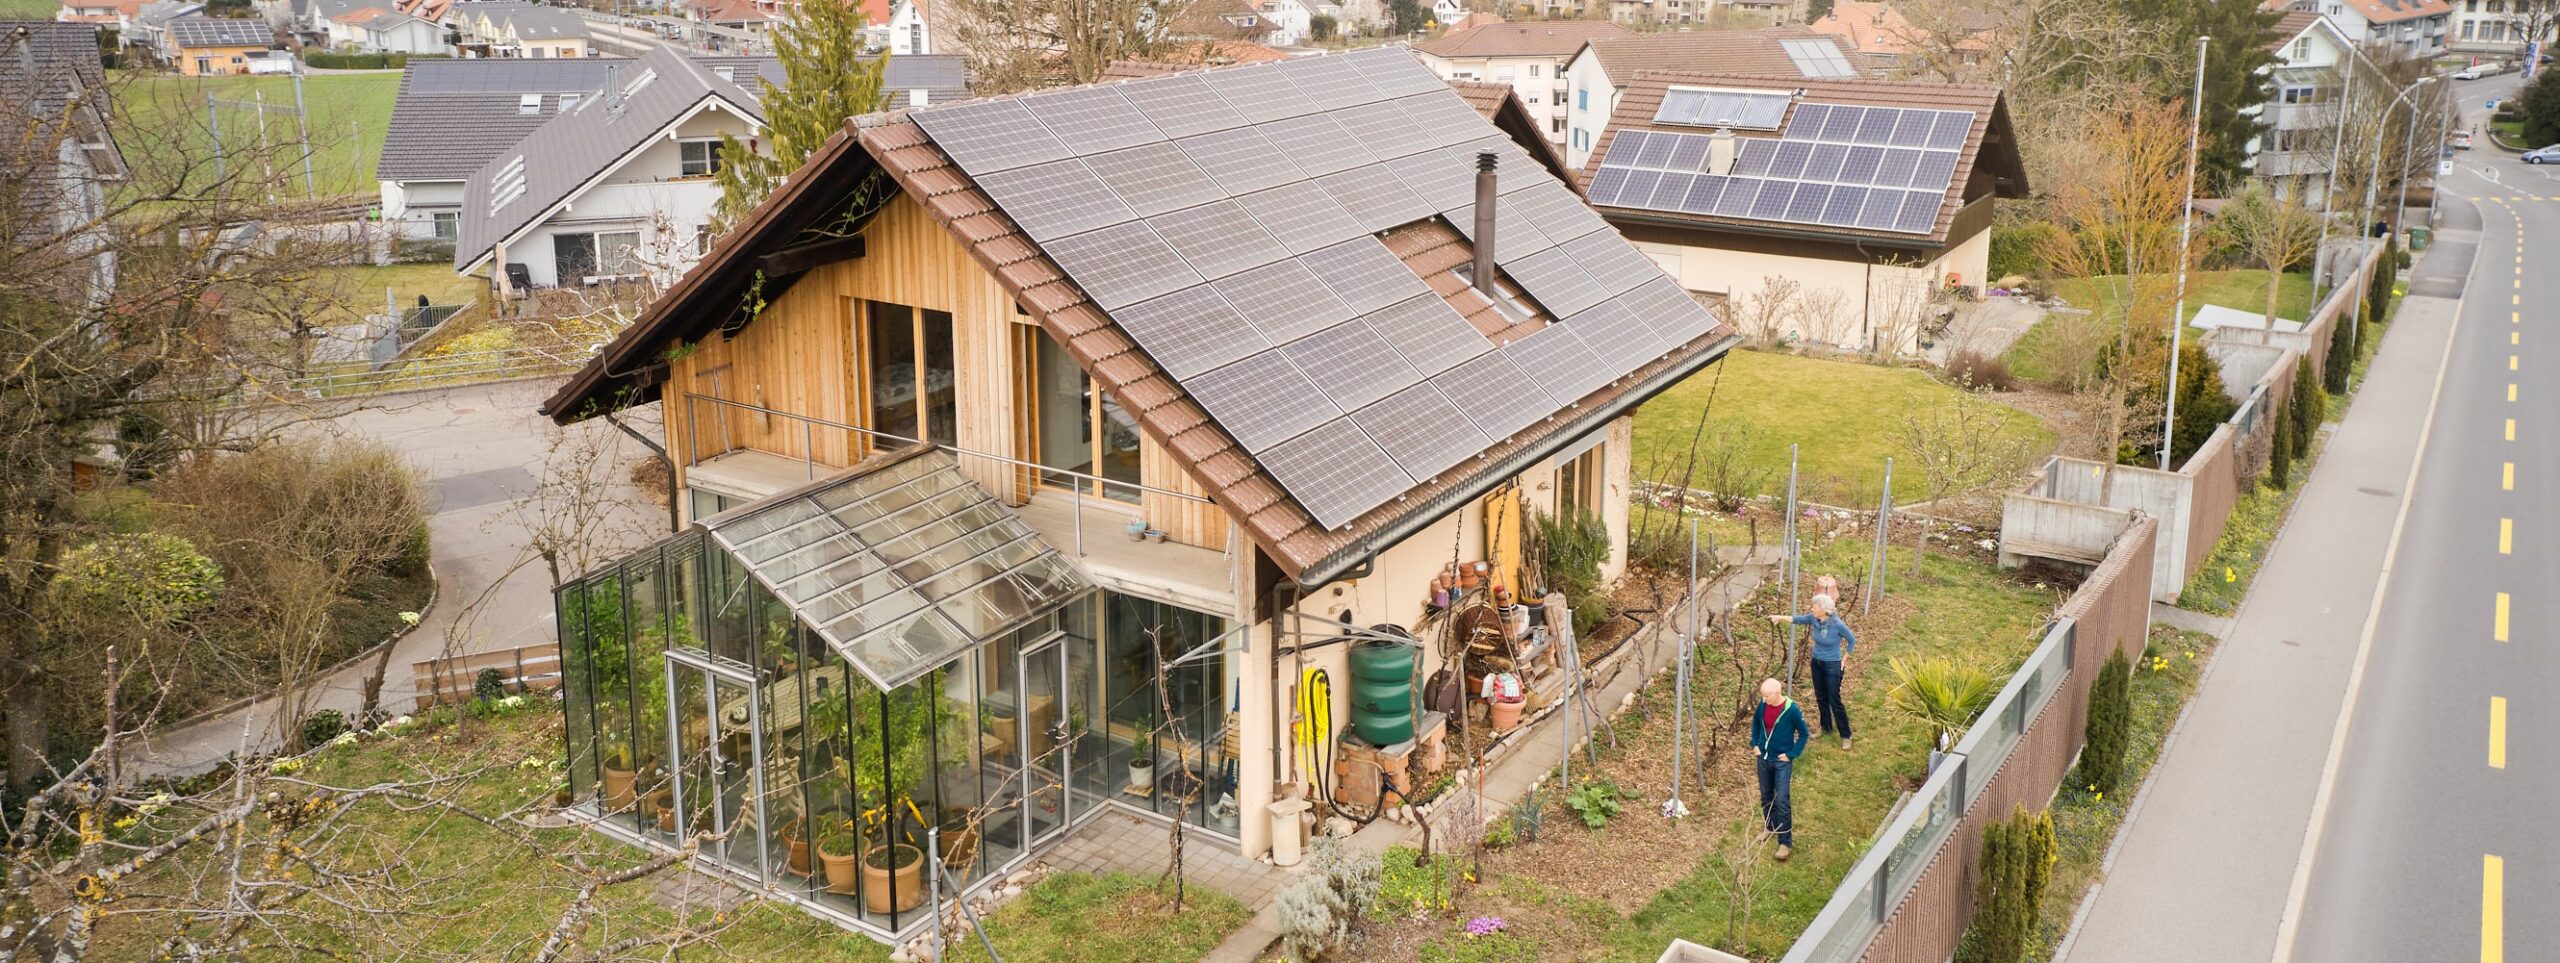 Auf dem Dach haben Jennis eine grosse Solaranlage, mit der sie ihren Energiebedarf zu 12 Prozent decken konnten. Dank der Salzbatterie liegt nun aber der Eigenverbrauch bei ca. 44 Prozent.